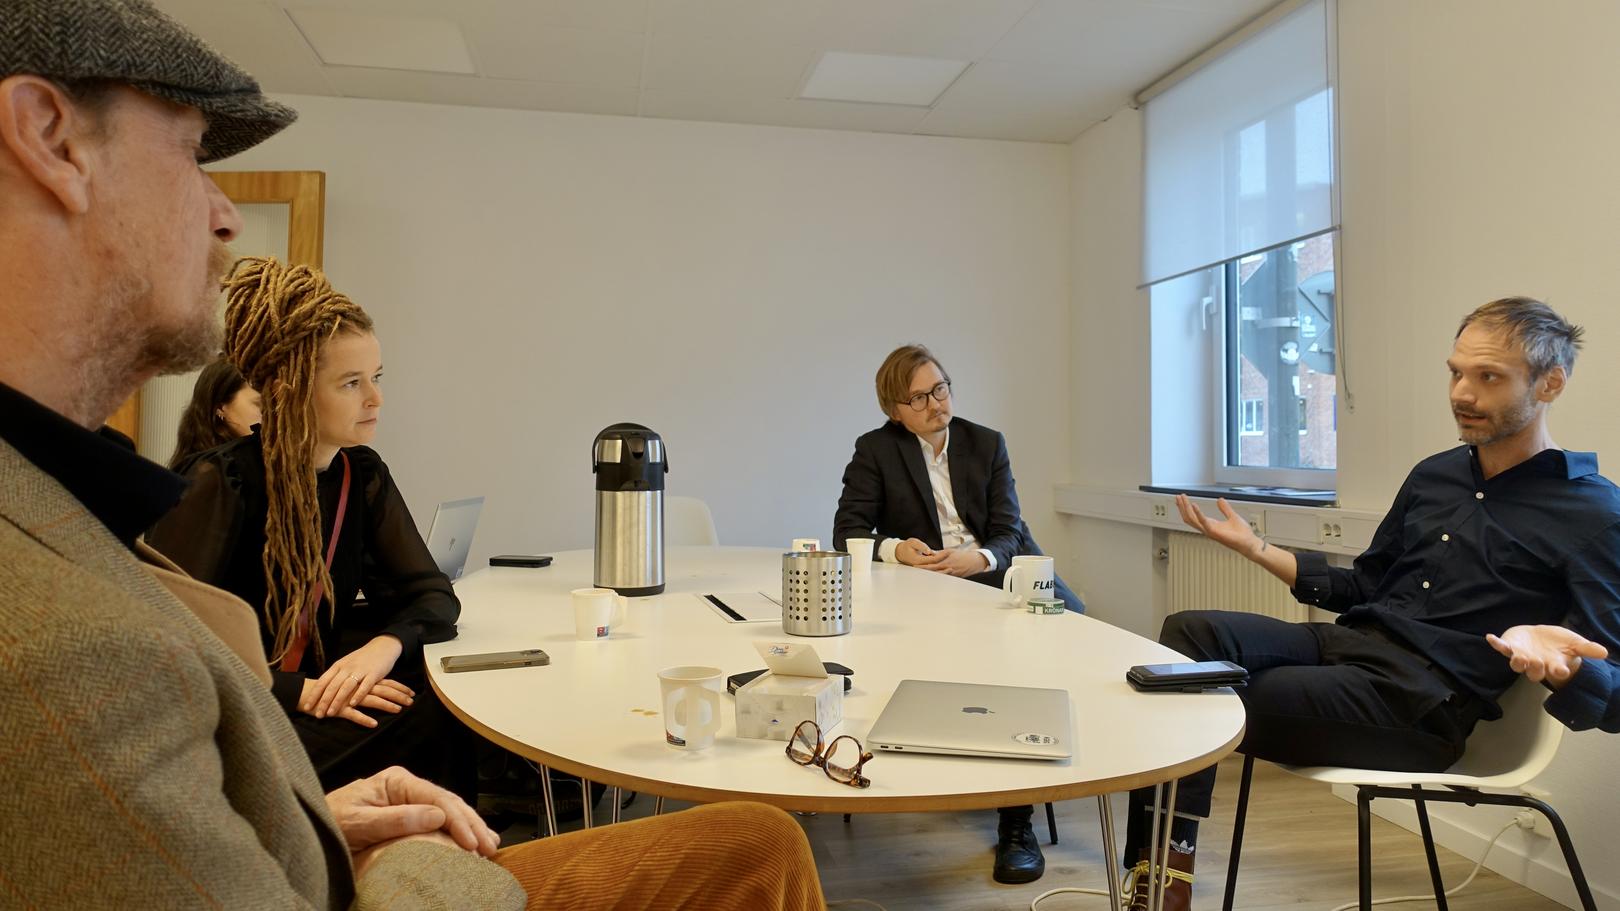 meeting at kulturen with amanda lind, viktor håkansson and Janne Grönholm